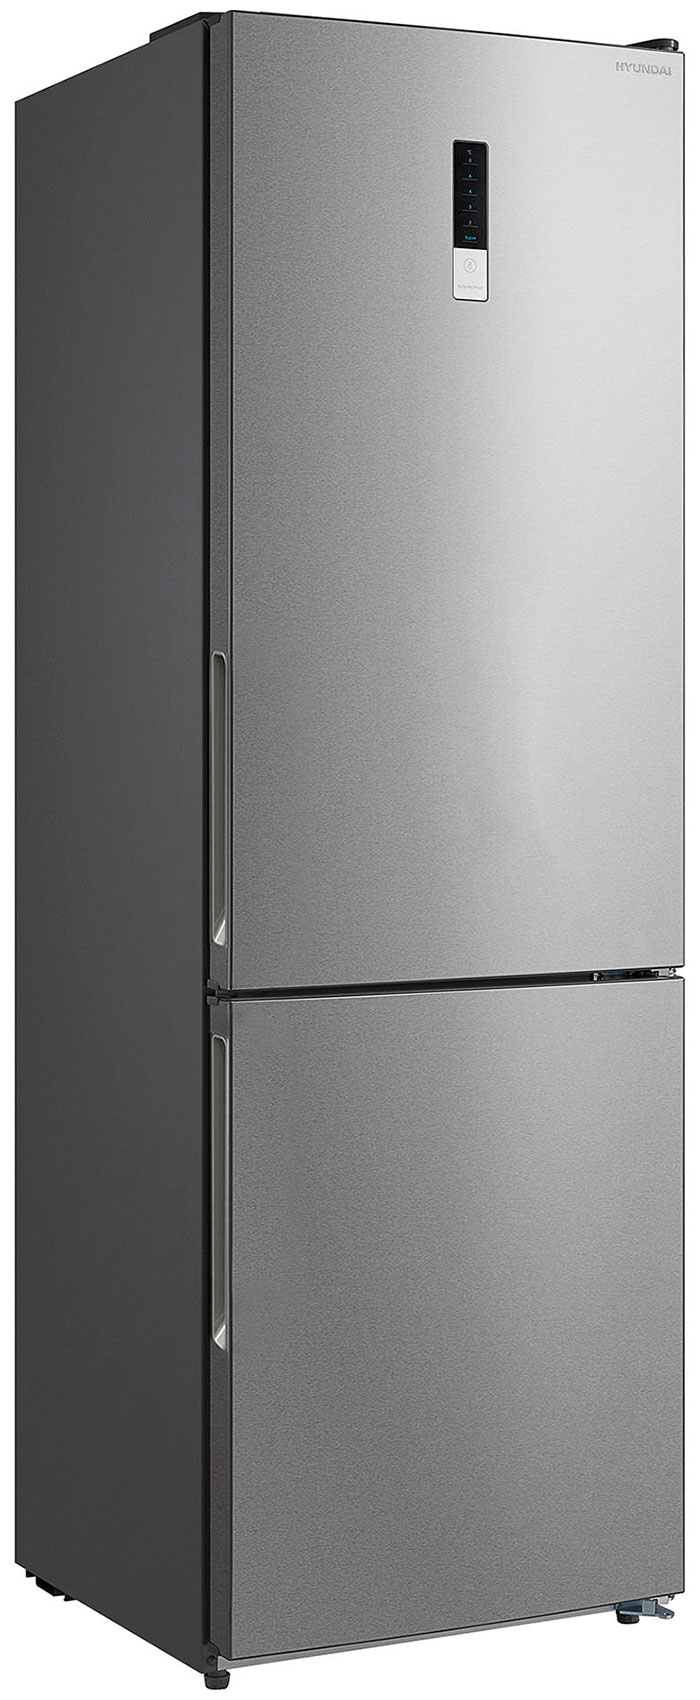 Двухкамерный холодильник Hyundai CC3595FIX нержавеющая сталь двухкамерный холодильник hyundai cc3093fix нержавеющая сталь